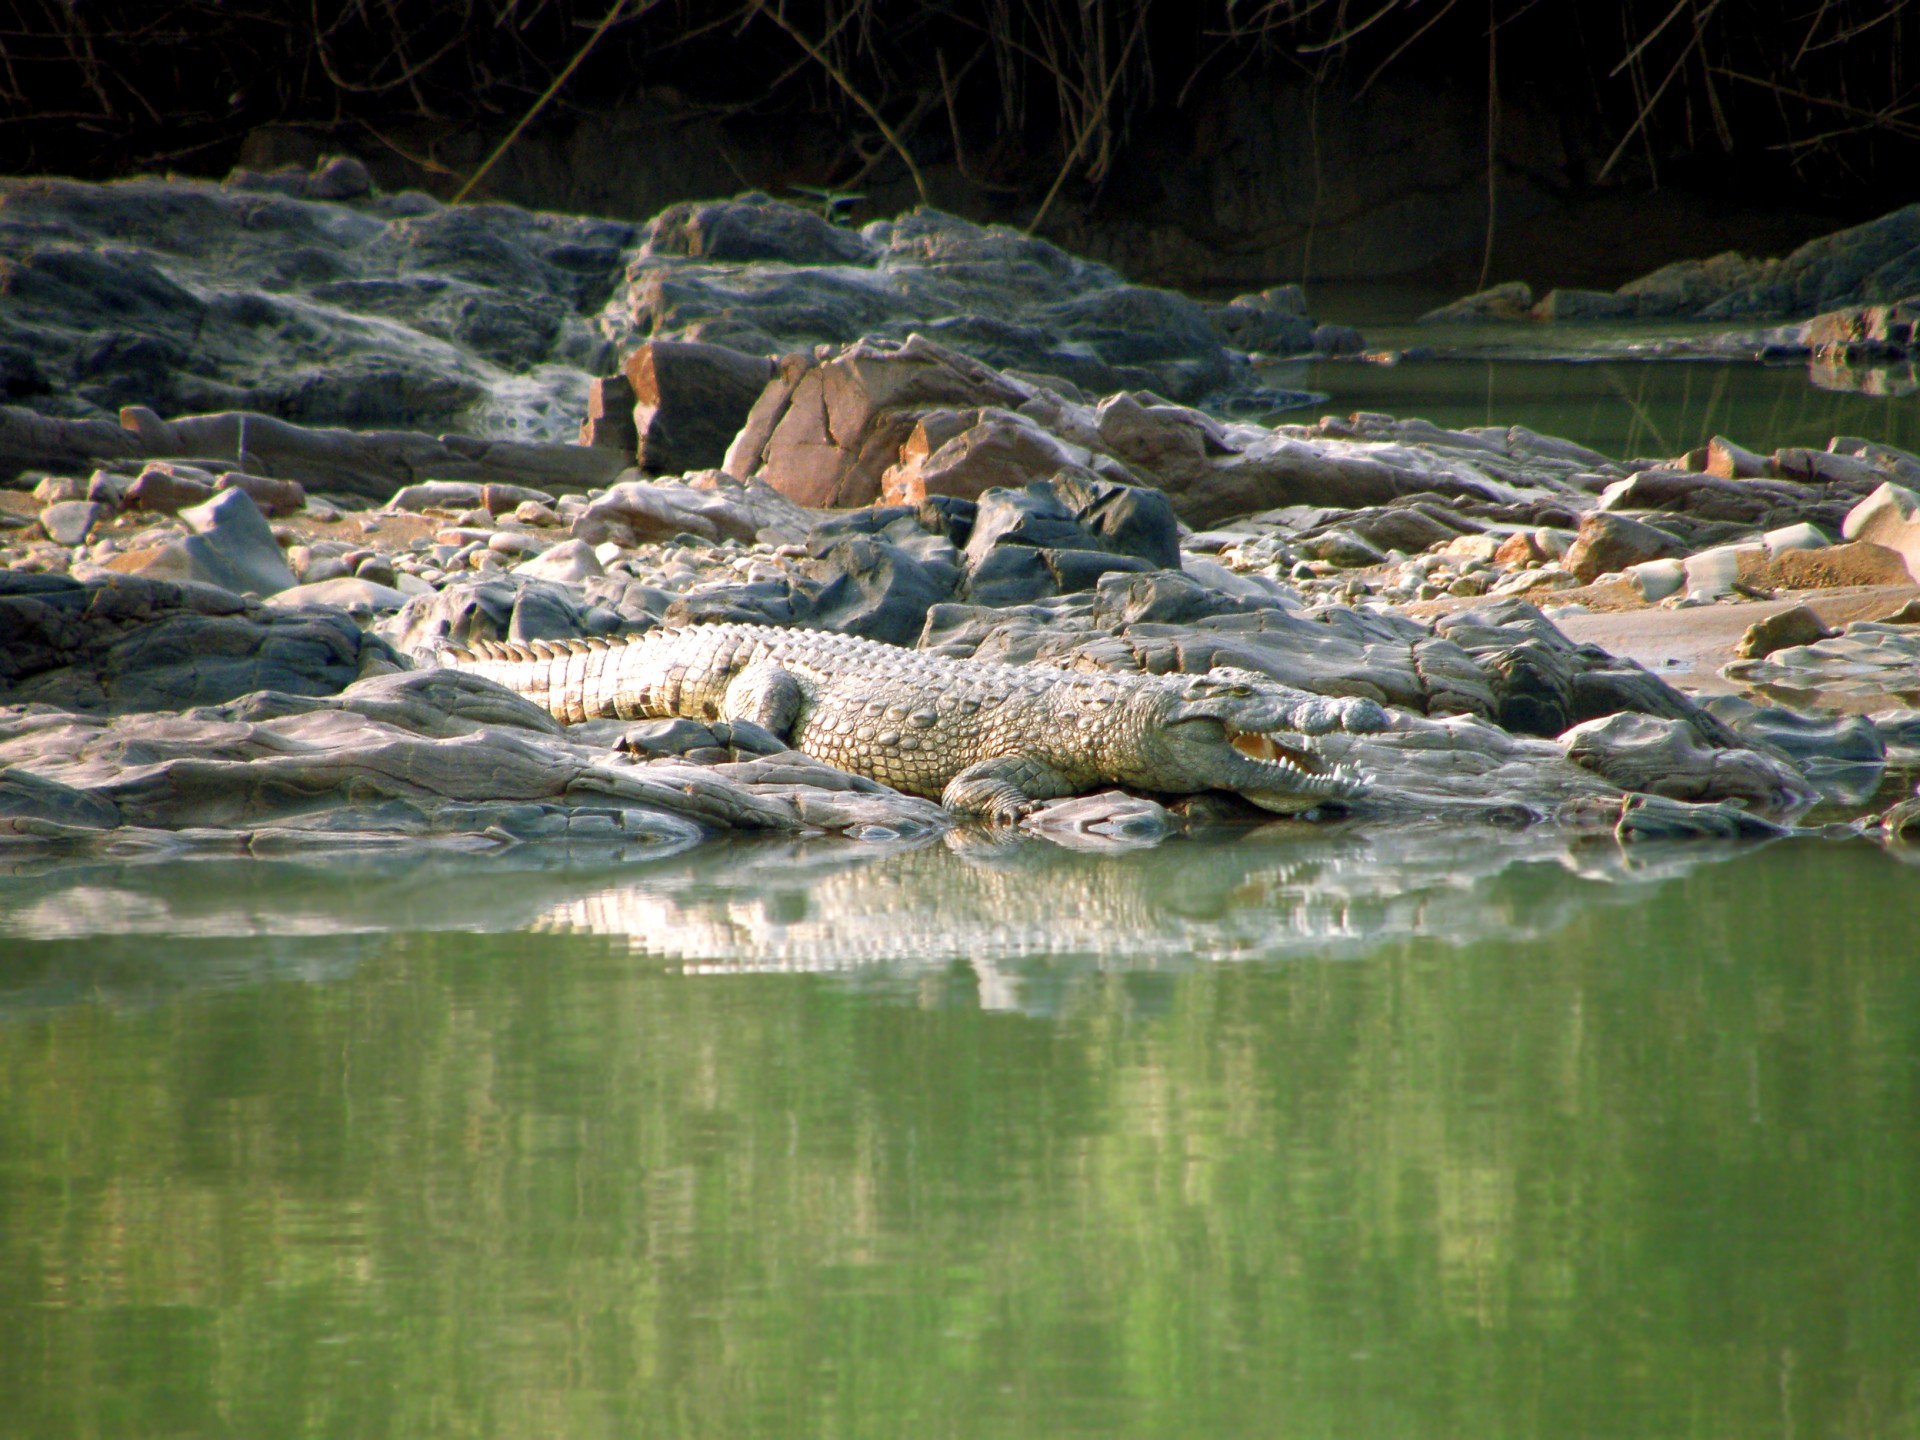 Crocodile On Bank Of River